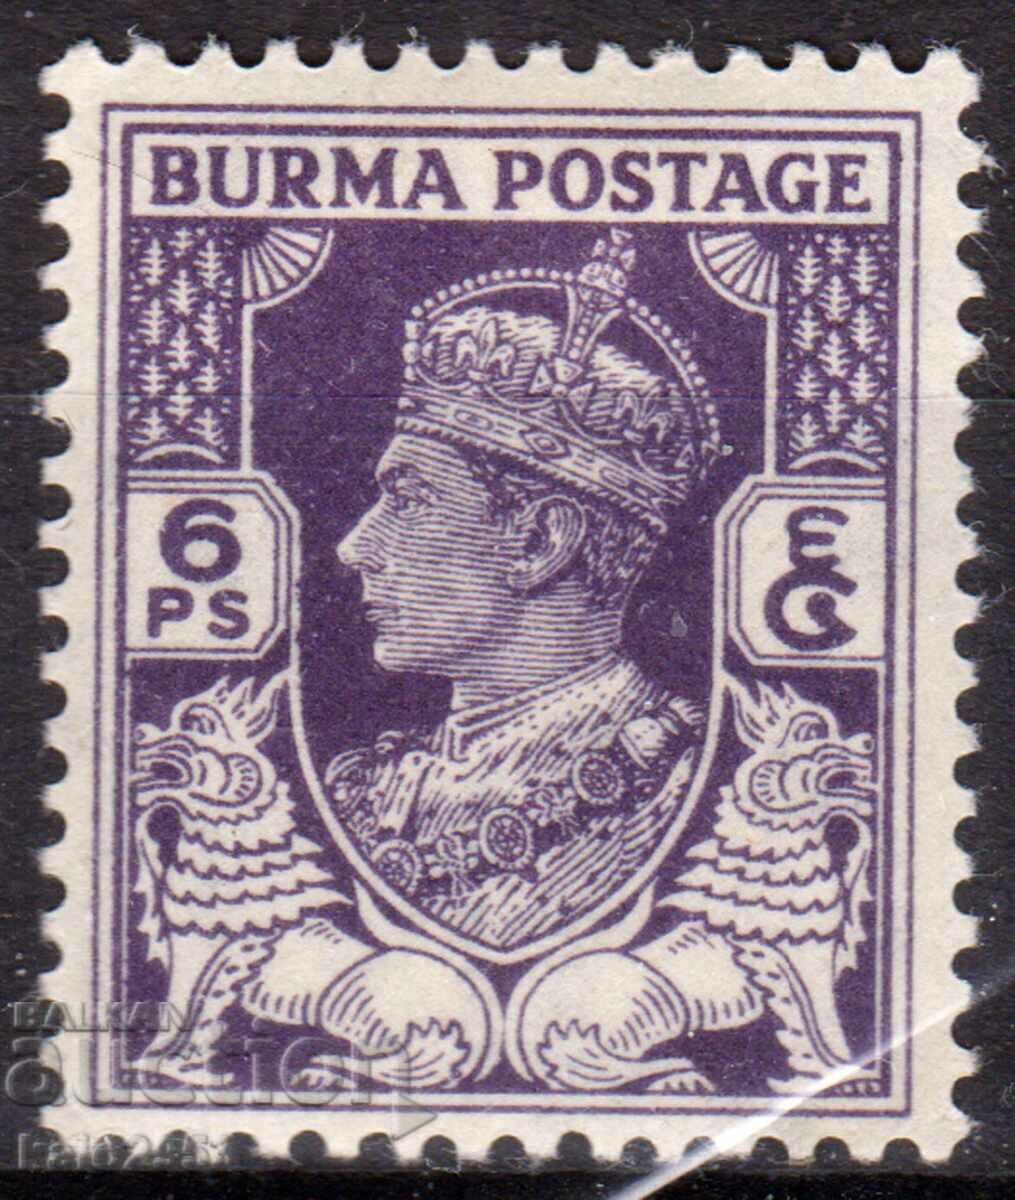 GB/Burma-1946-Regular-KG V-MLH